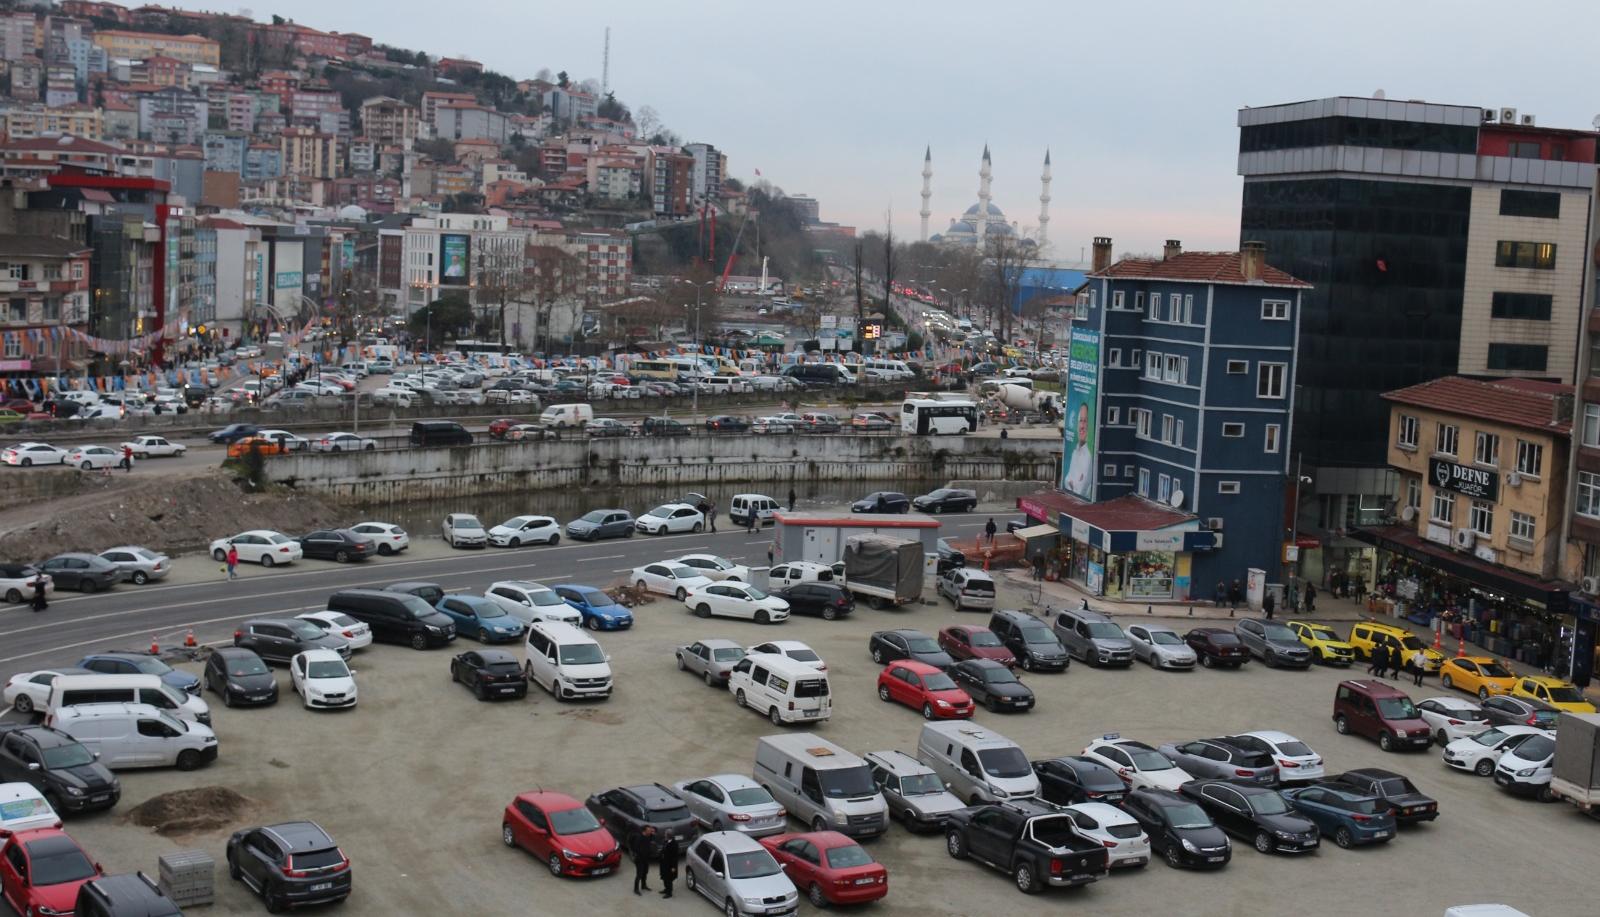 “Kömür kent” Zonguldak’ta yerin altı bir dert üstü başka dert